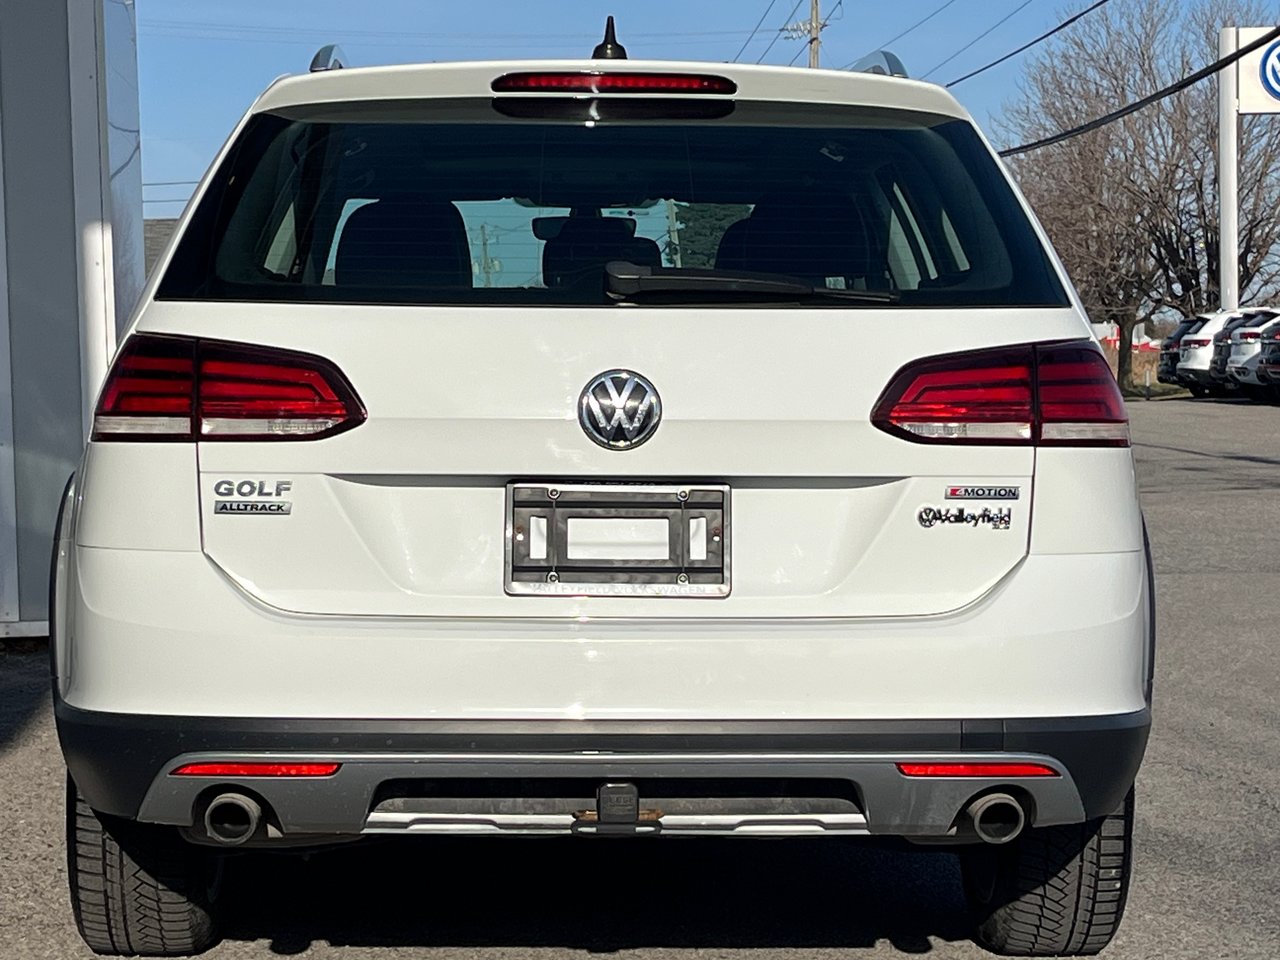 Volkswagen GOLF ALLTRACK Highline+4 MOTION+CUIR+TOIT+DSG AUTOMATIQUE 2019 *JAMAIS ACCIDENTÉ*